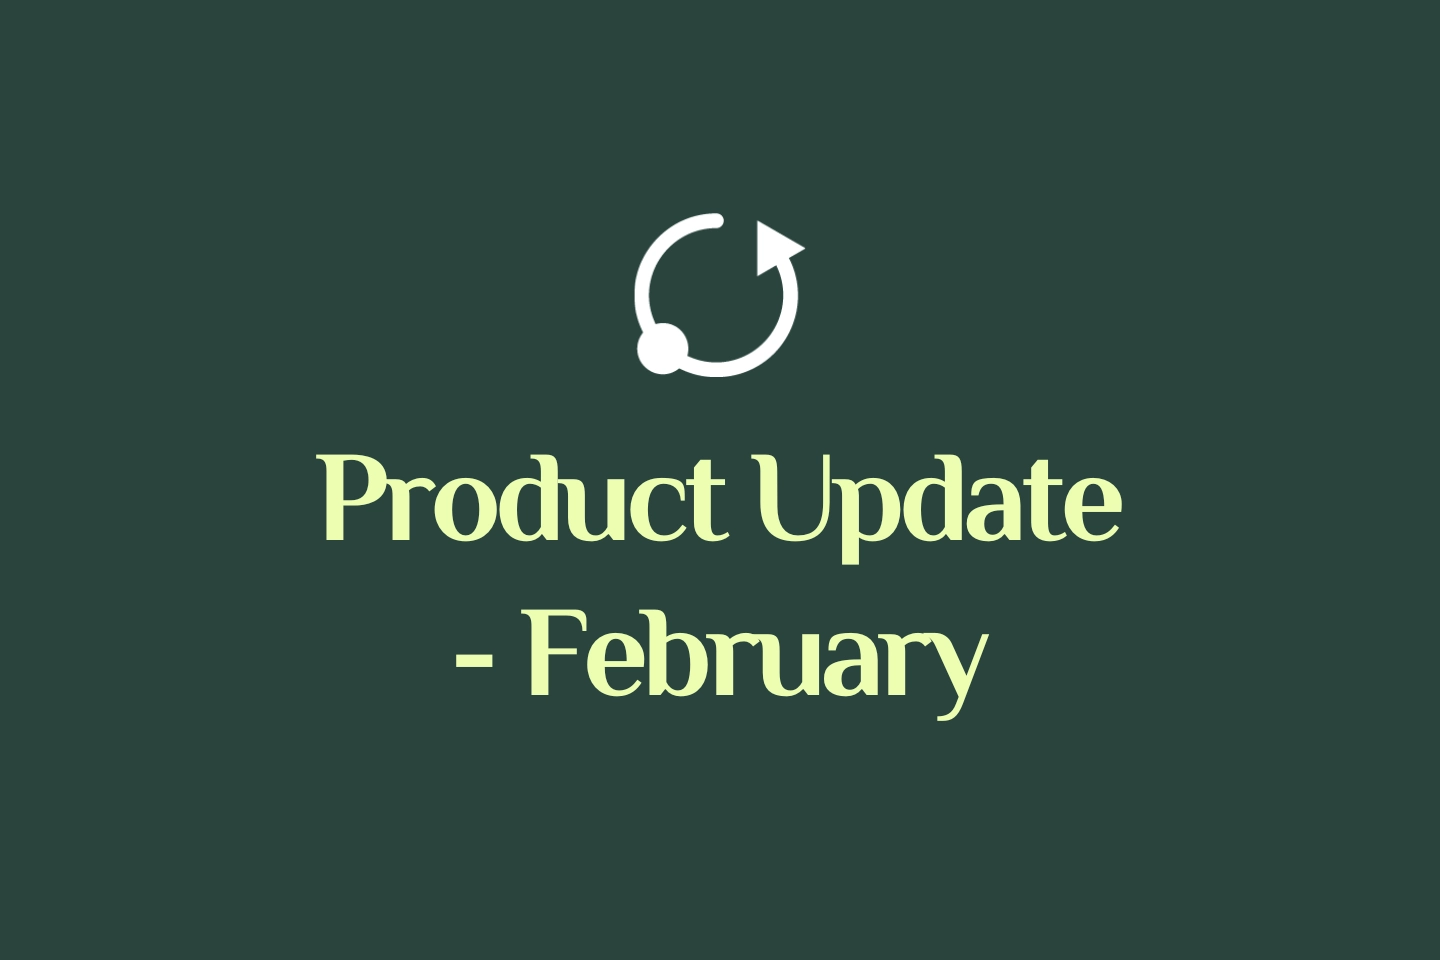 Product update Sharefox